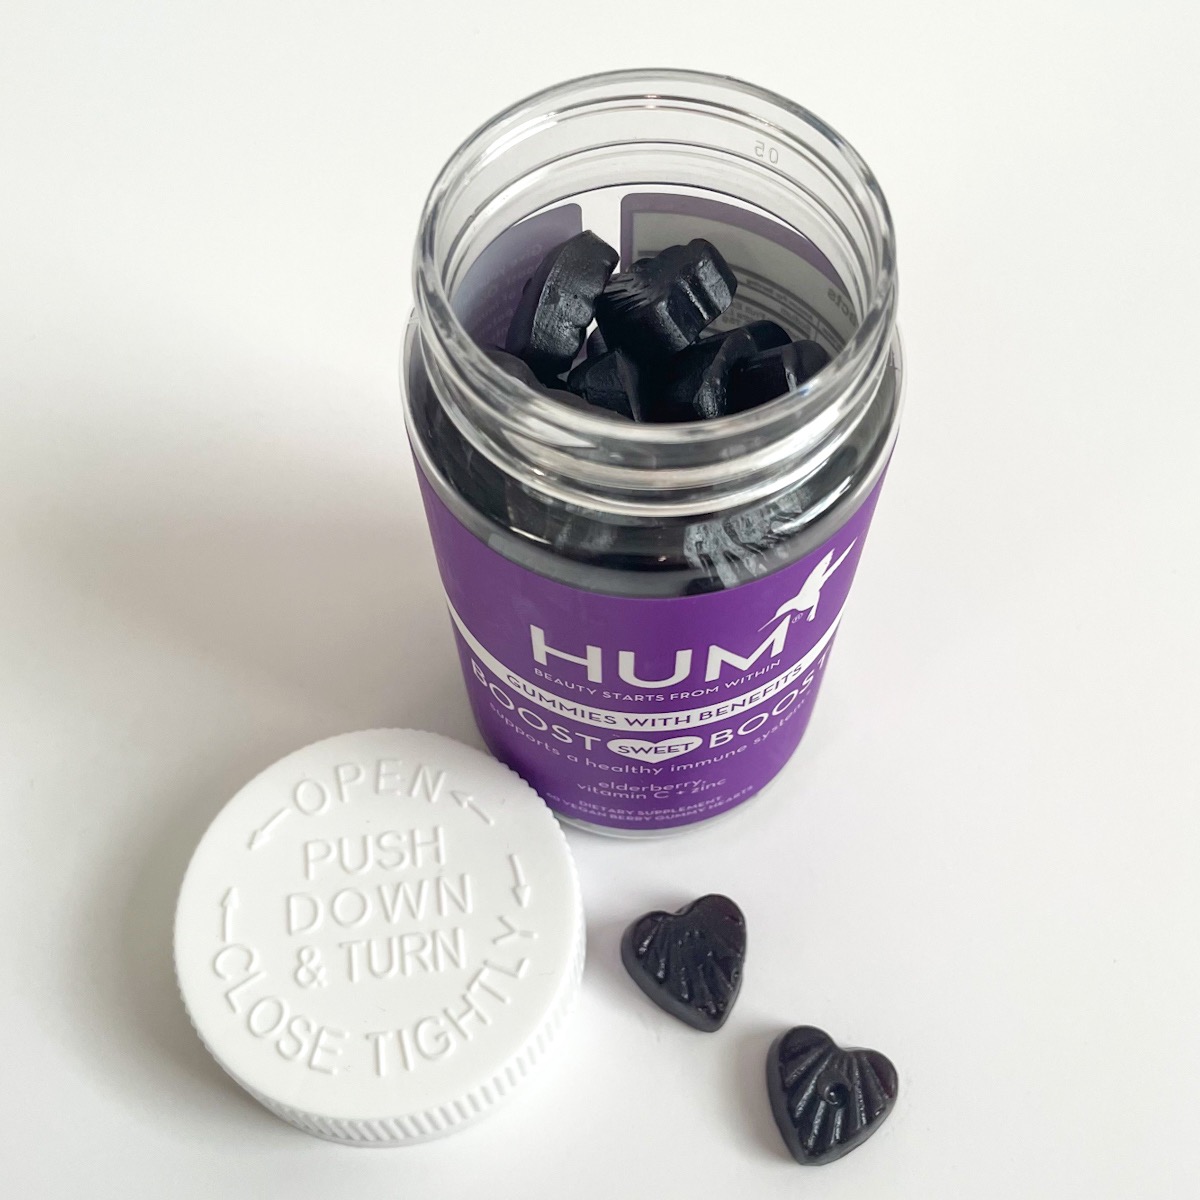 opened purple bottle showing two heart shaped gummies